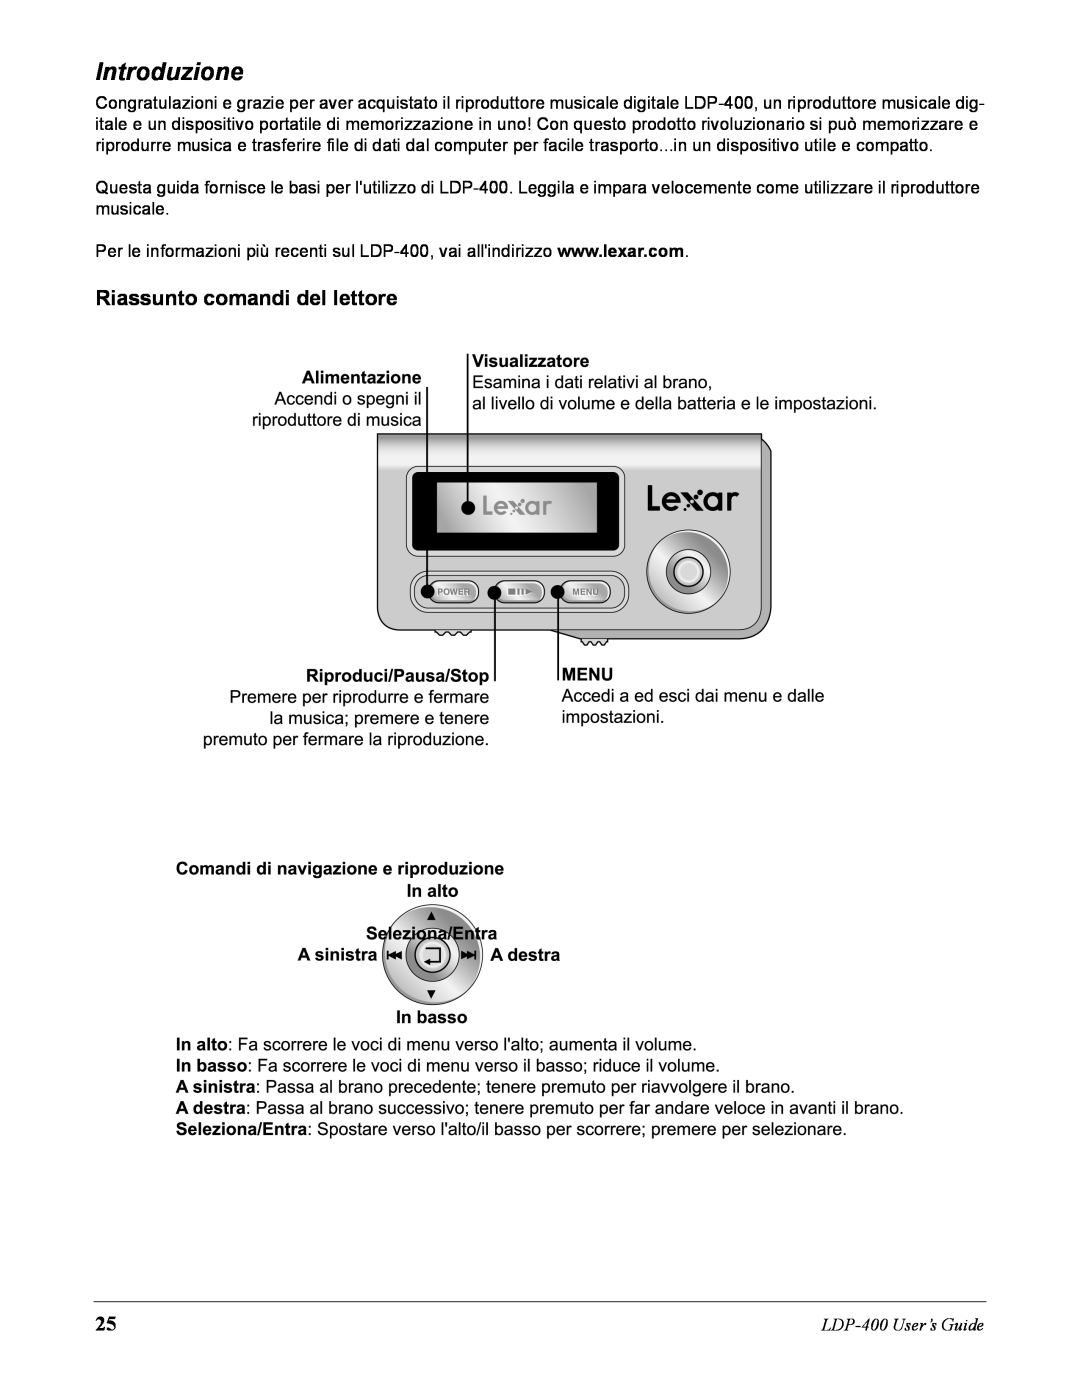 Lexar Media manual Introduzione, Riassunto comandi del lettore, LDP-400User’s Guide 